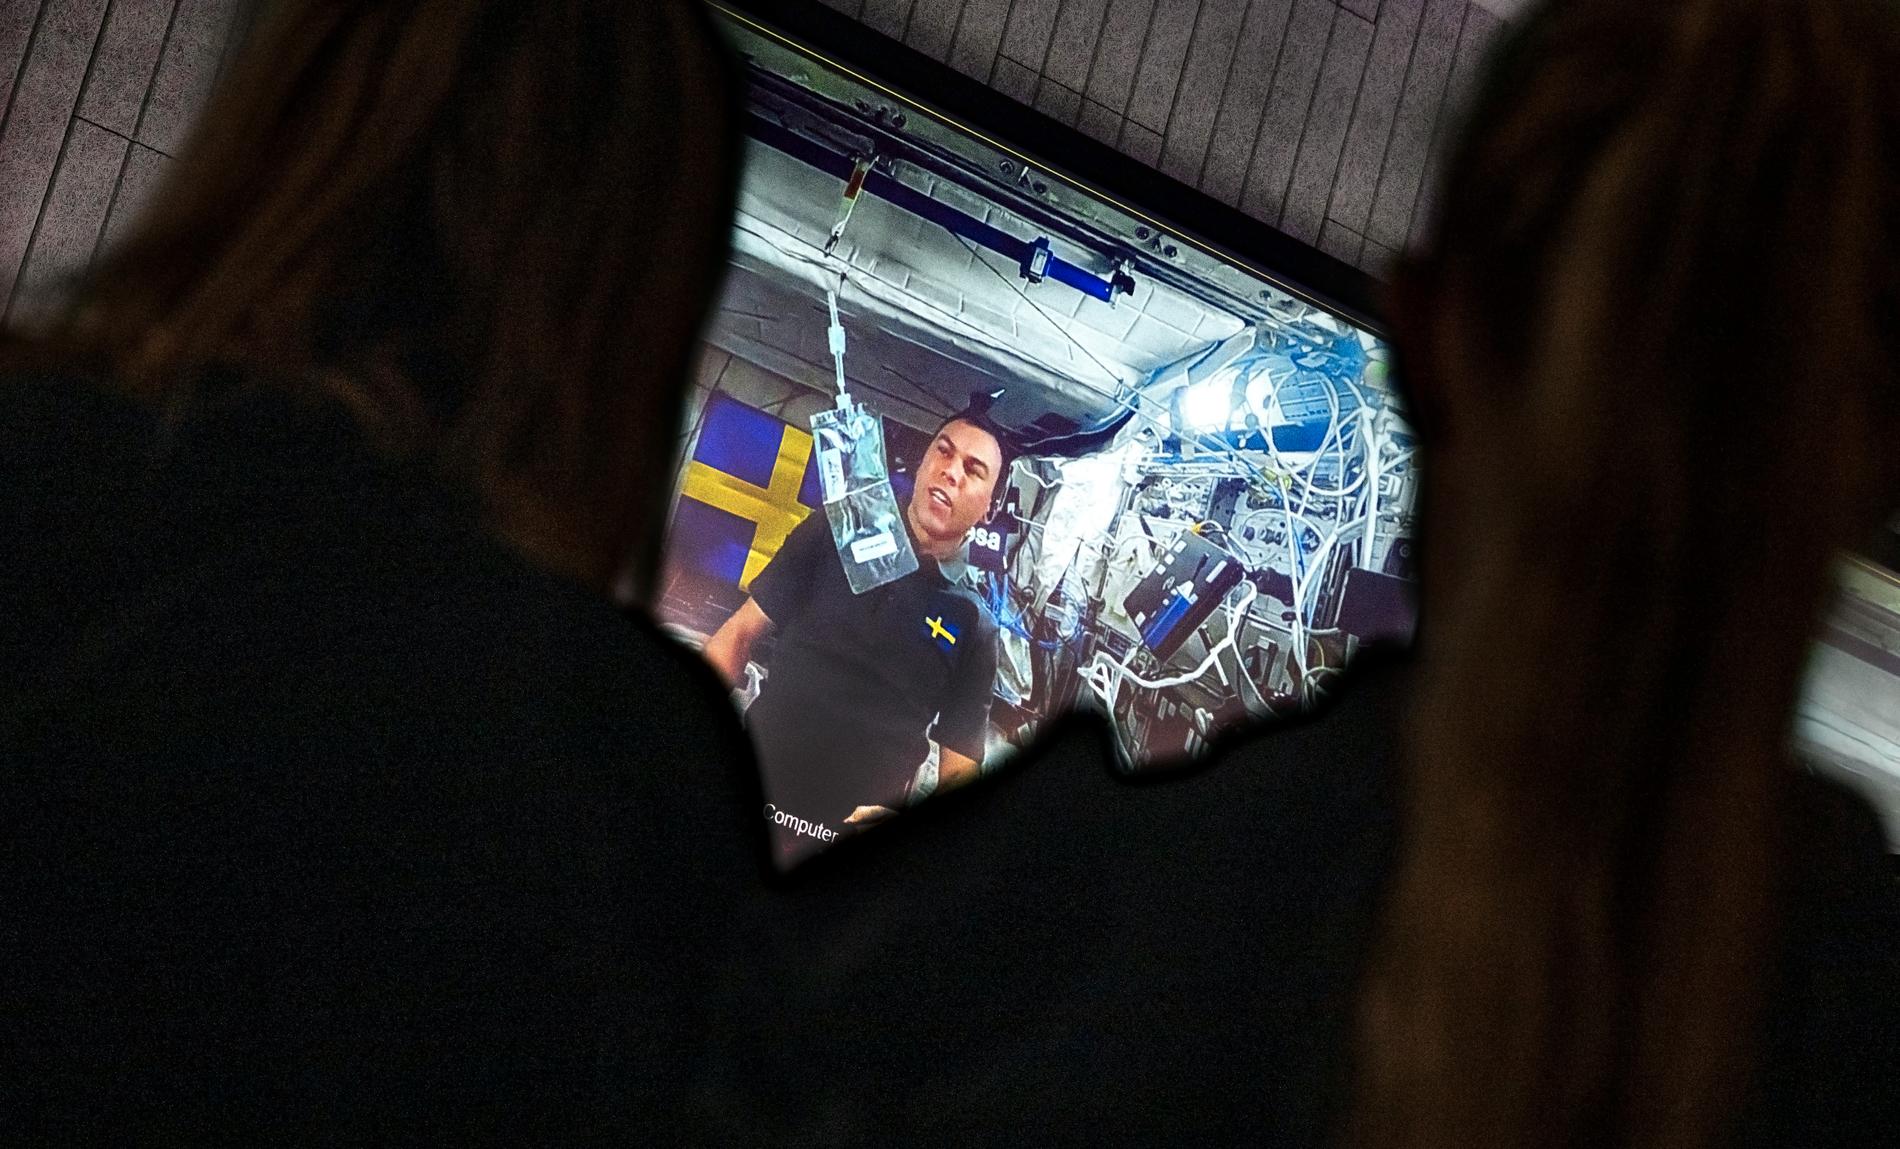 Runt 200 skolelever samlades på Tekniska museet för en hel dag med rymdaktiviteter. Dagen avslutades med att eleverna fick ställa frågor till Sveriges nya astronaut, Marcus Wandt.